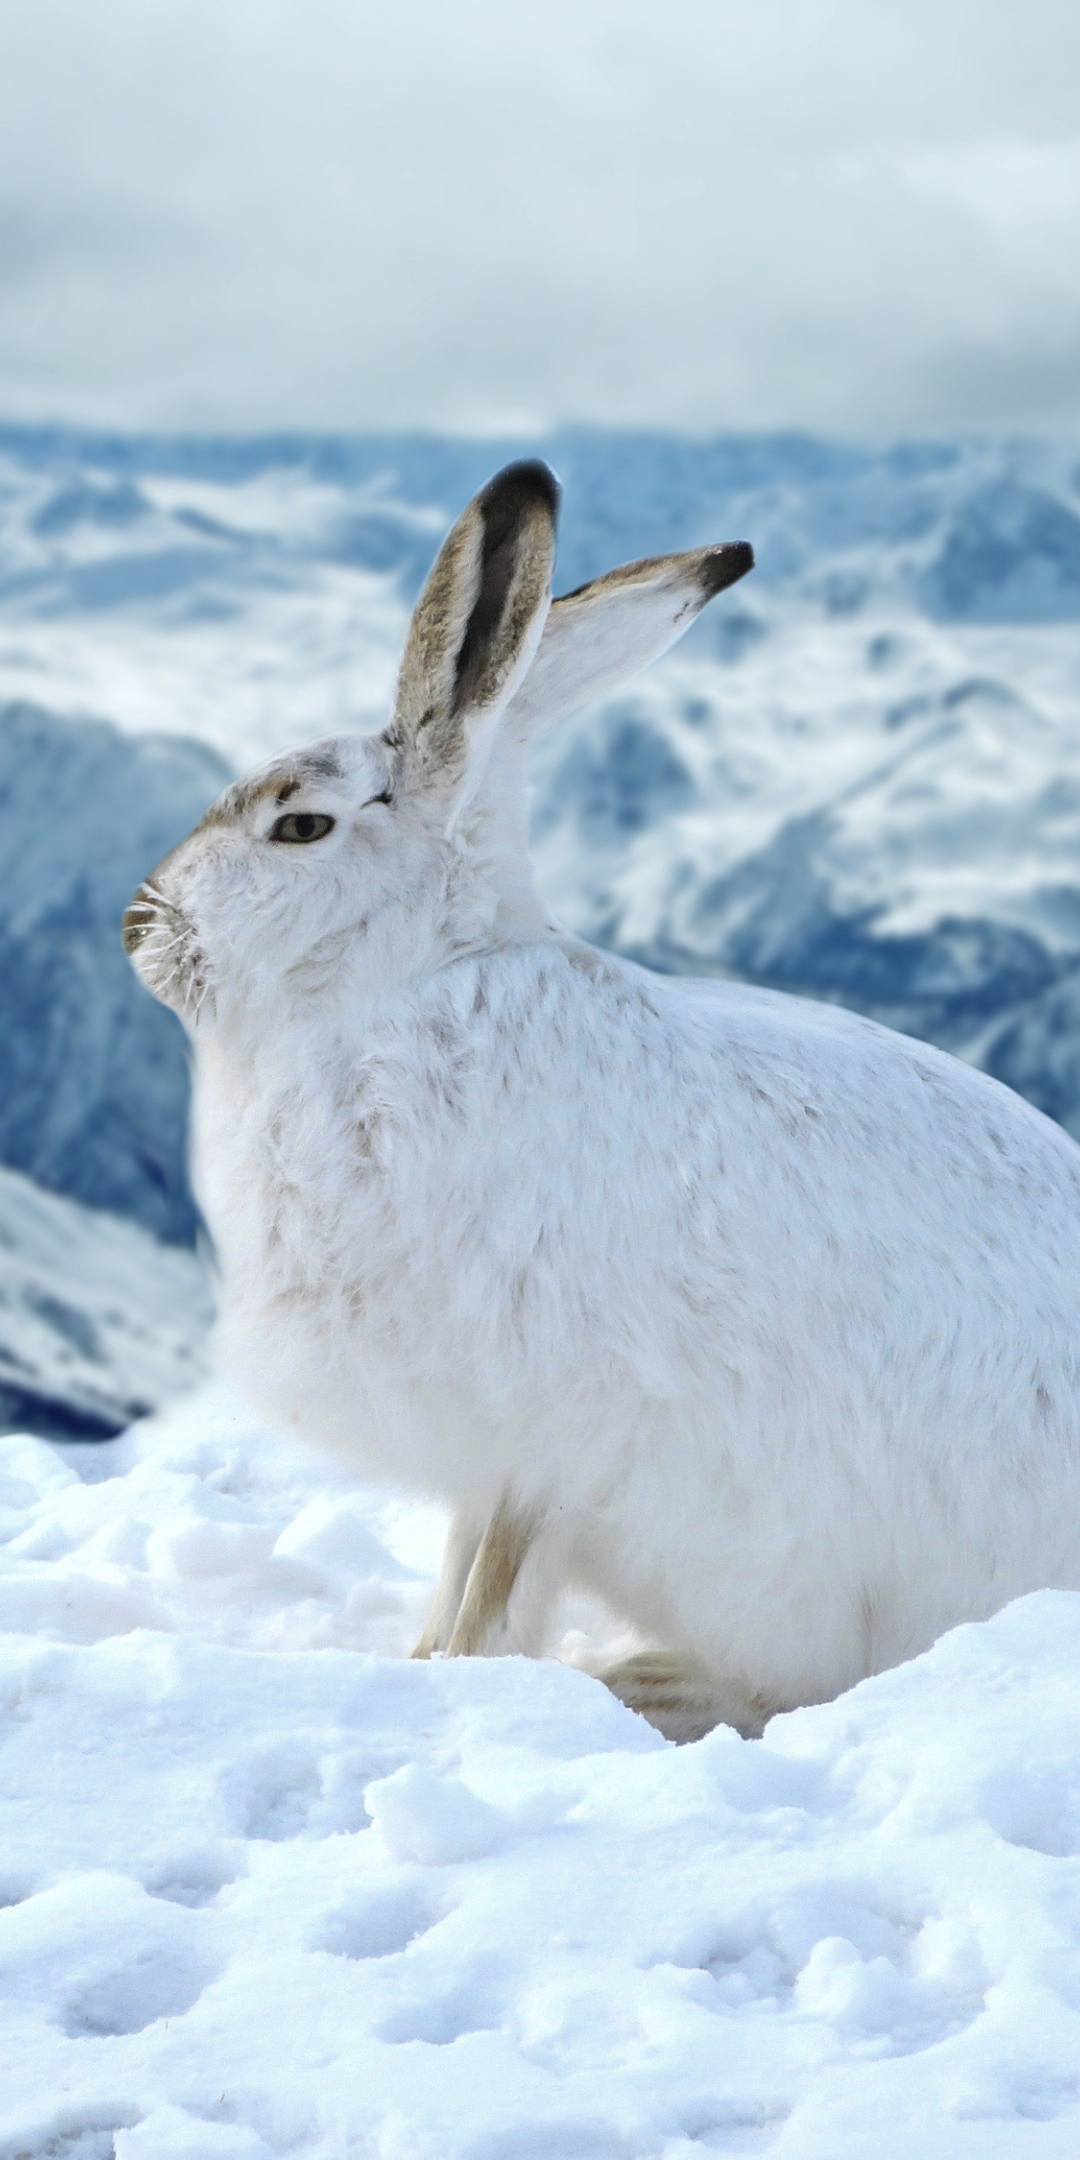 Bunny, rabbit, animal, winter, outdoor, 1080x2160 wallpaper